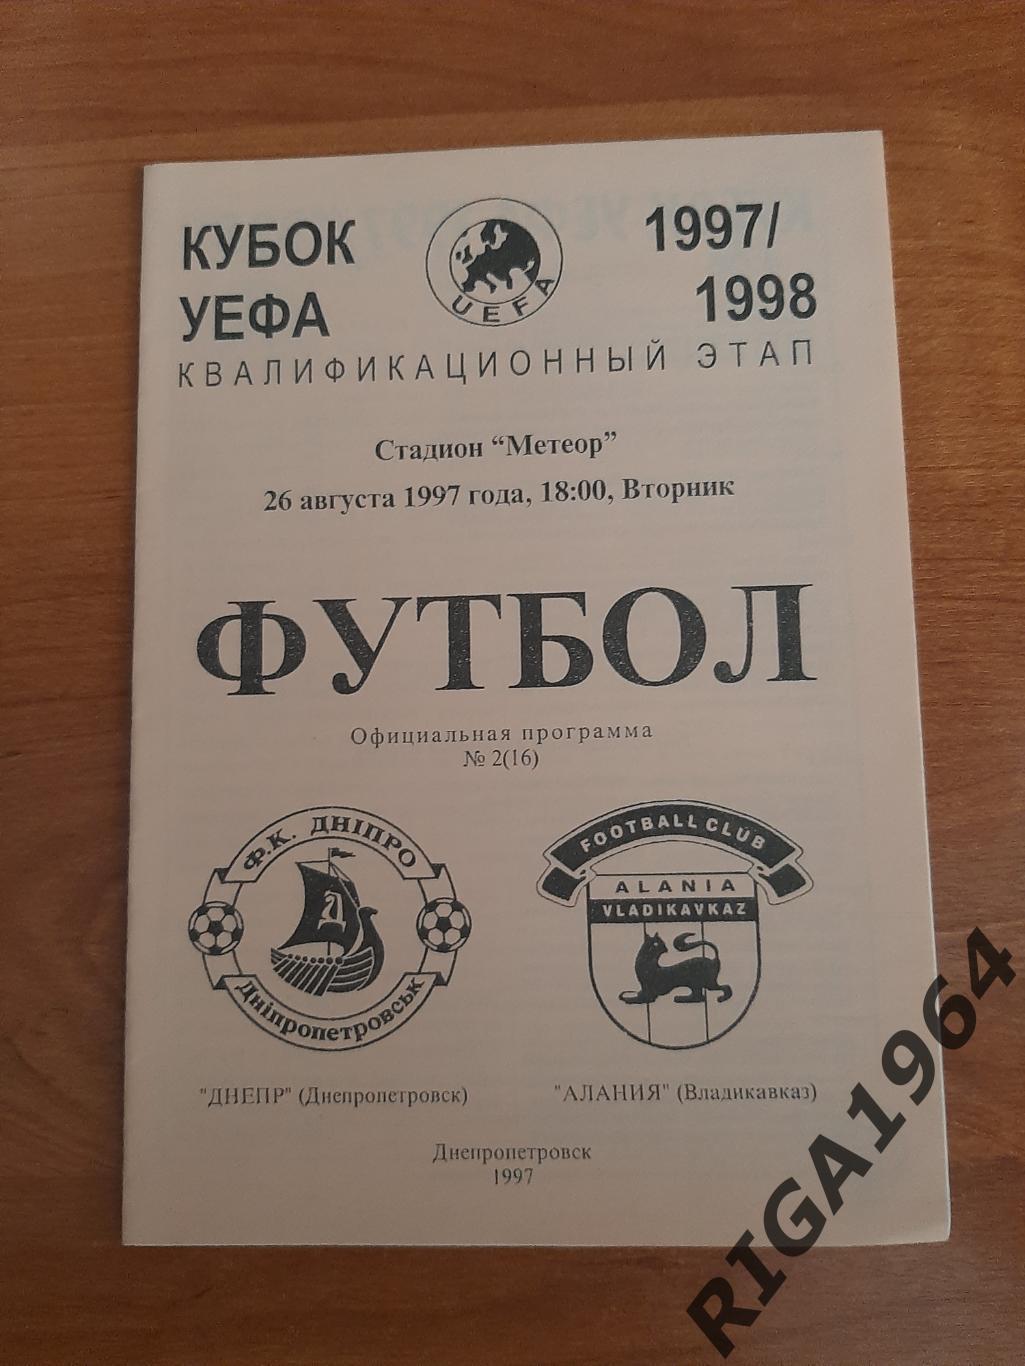 Кубок УЕФА 1997/98 Днепр Днепропетровск, Украина-Алания Владикавказ